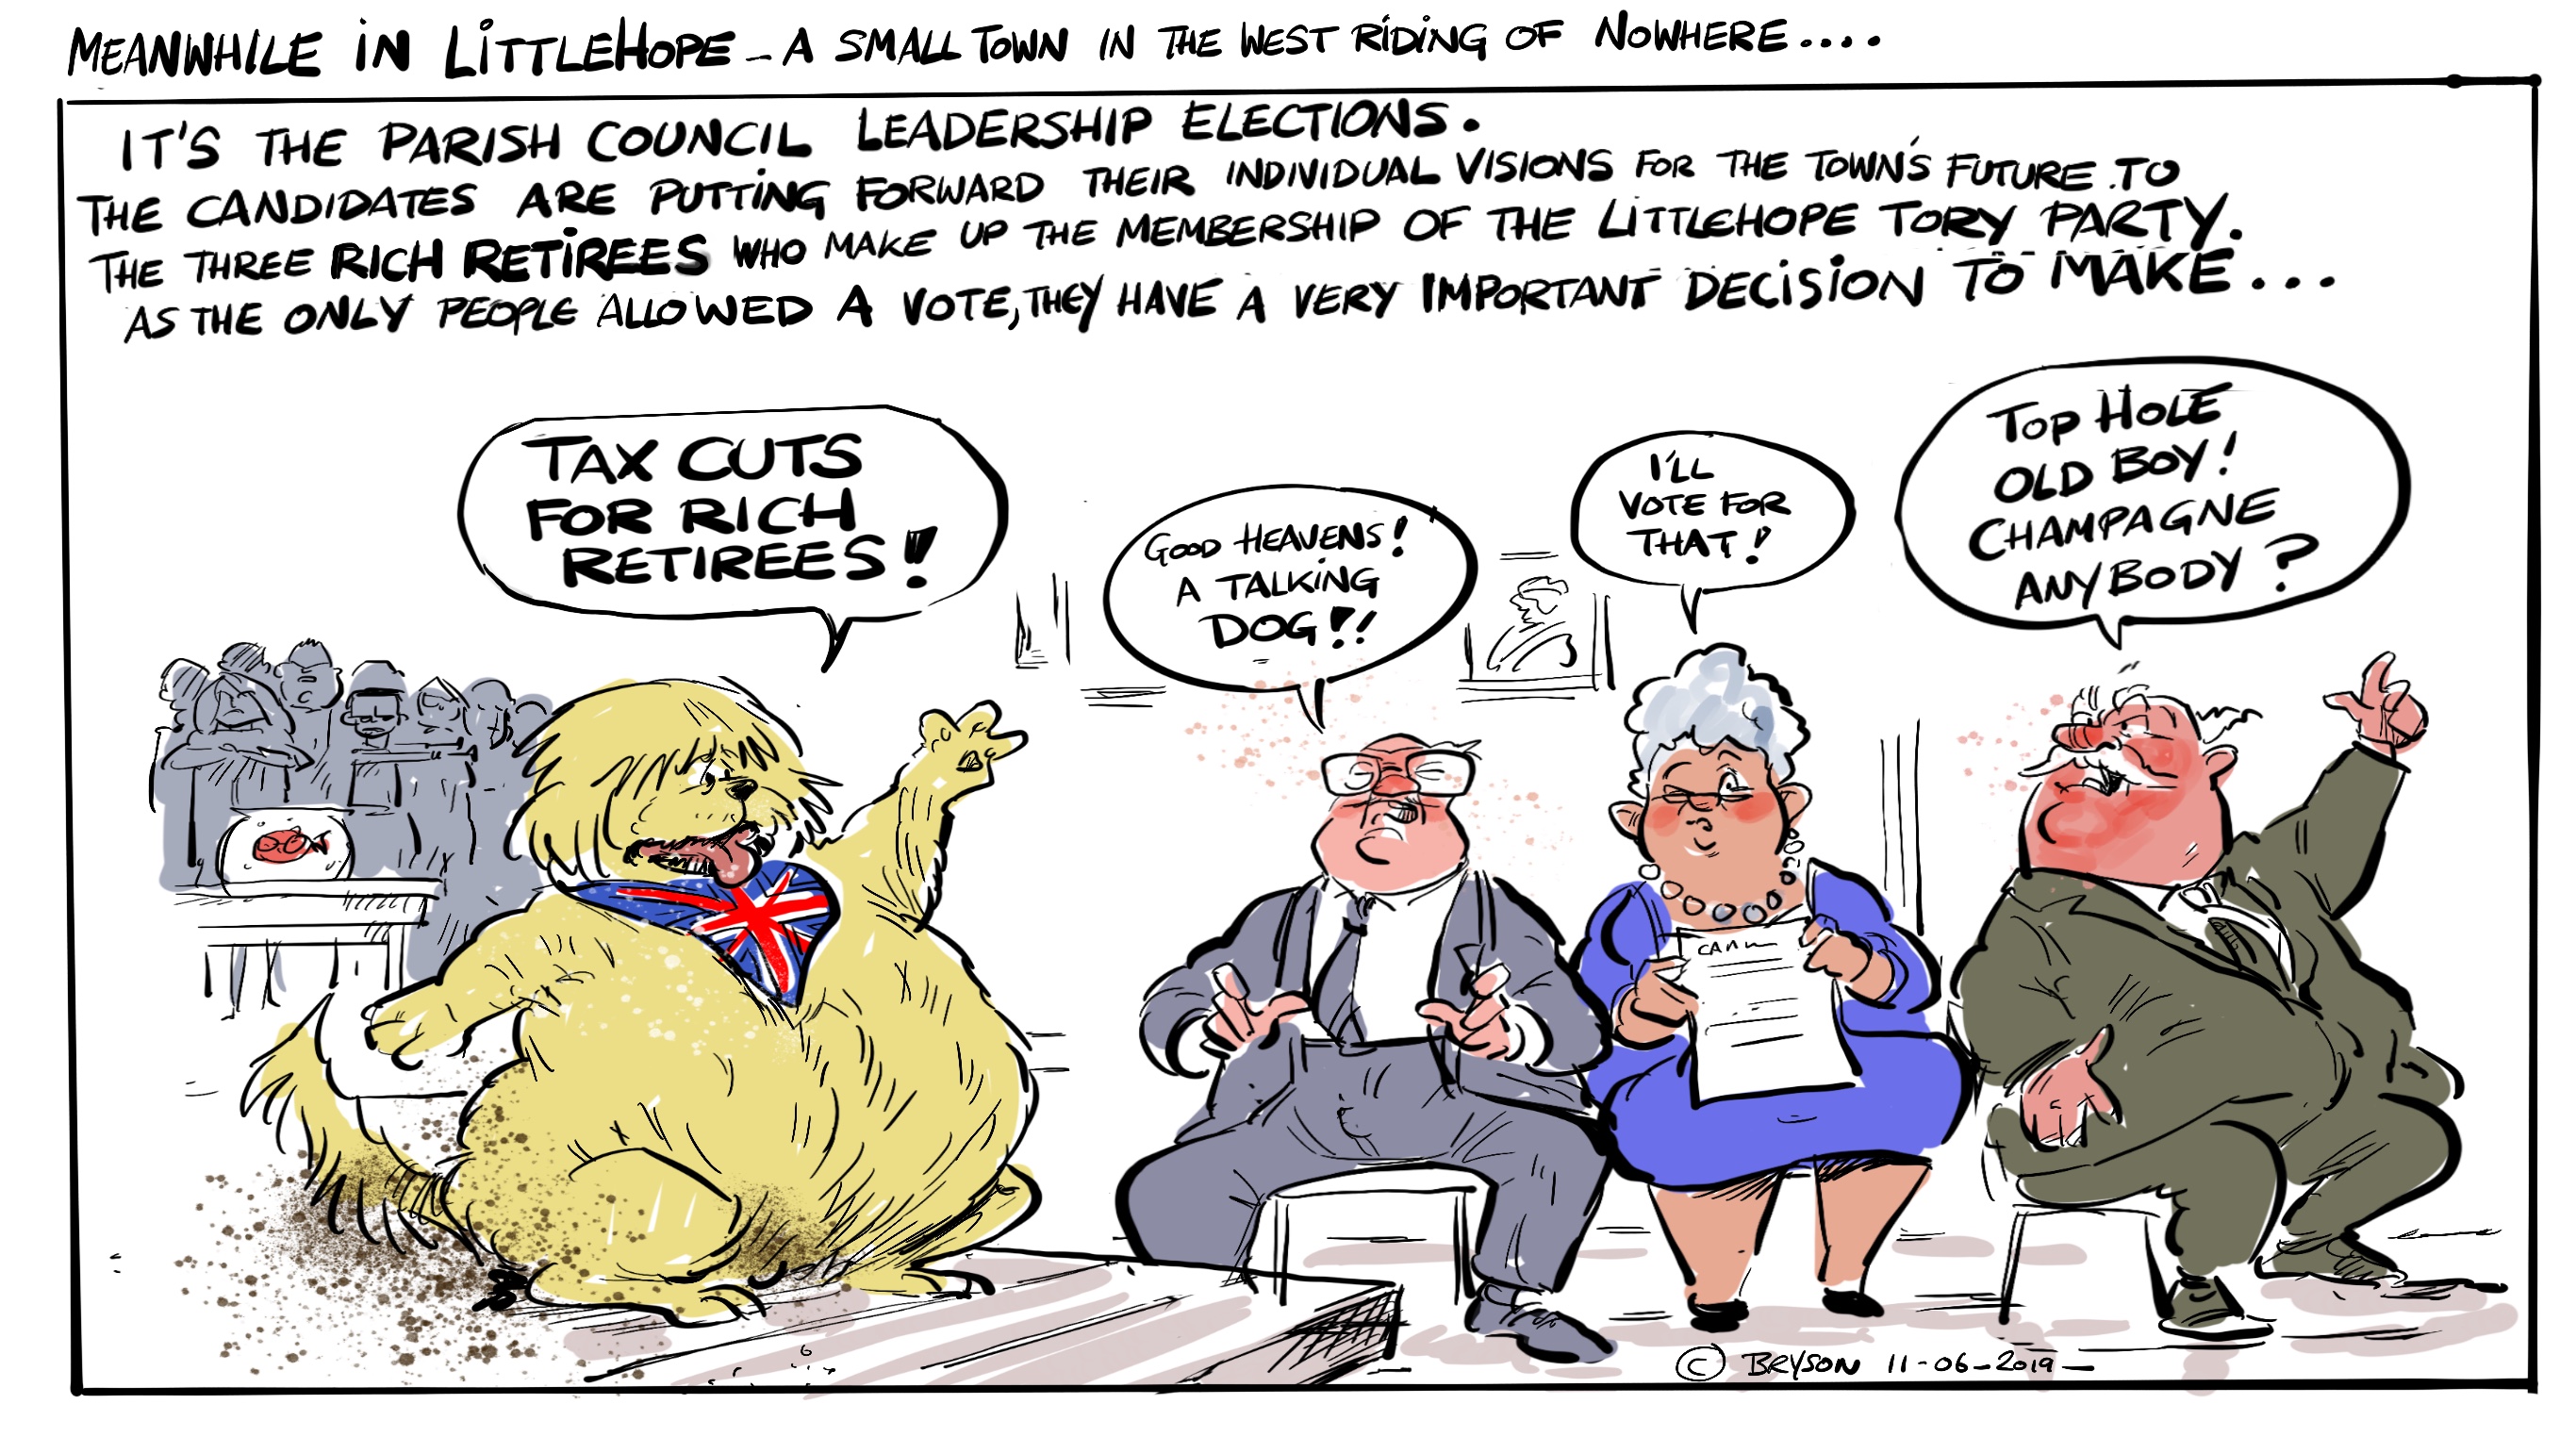 Littlehope politics cartoon